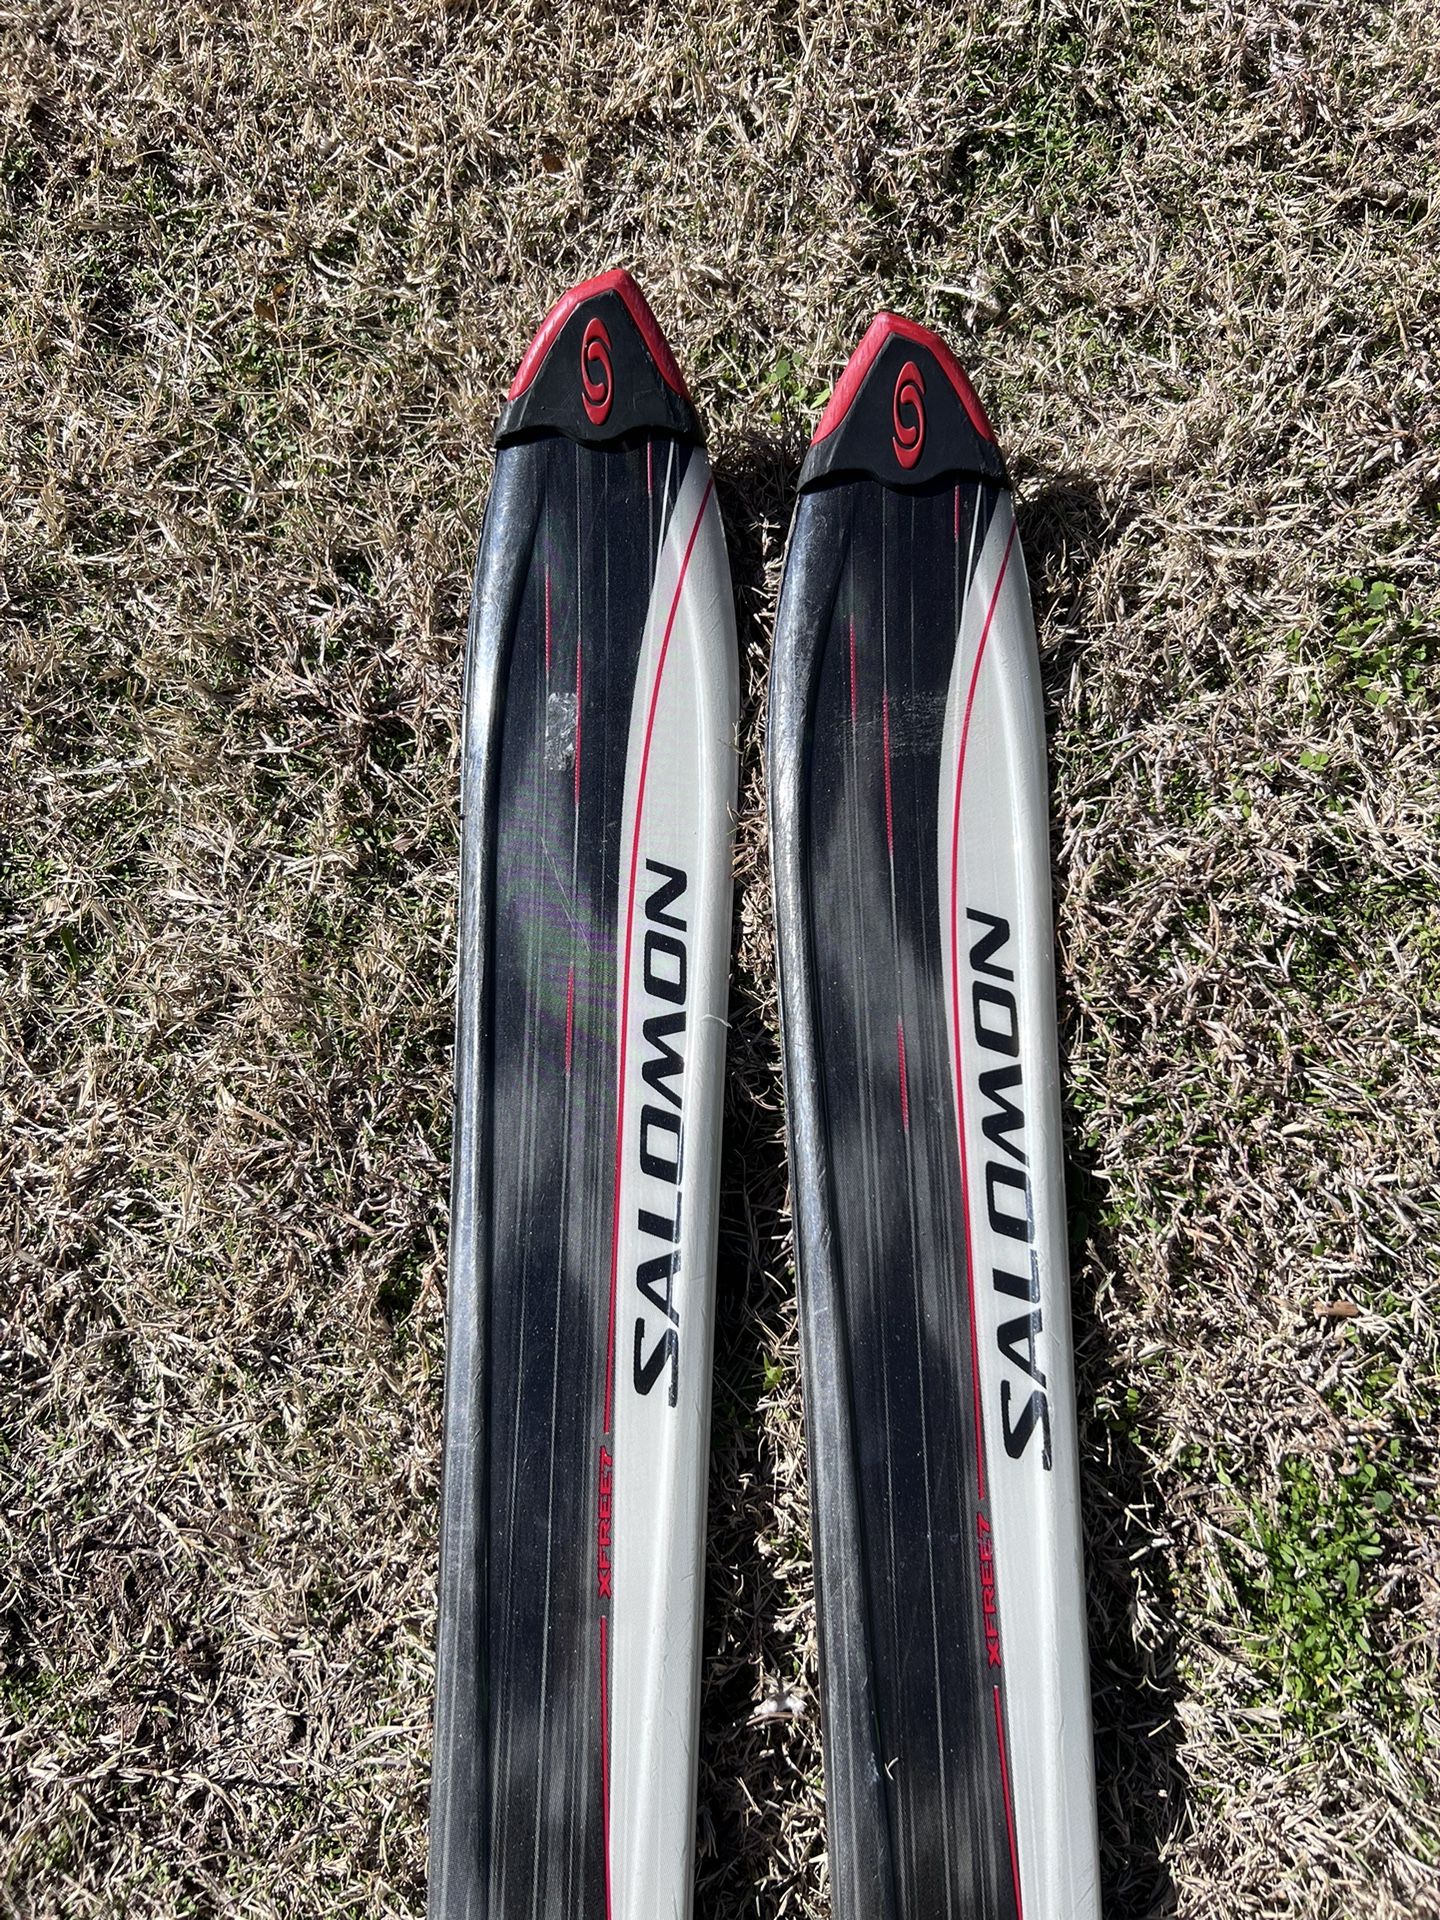 Salomon Xfree7 Skis 184 cm with look nx10 bindings